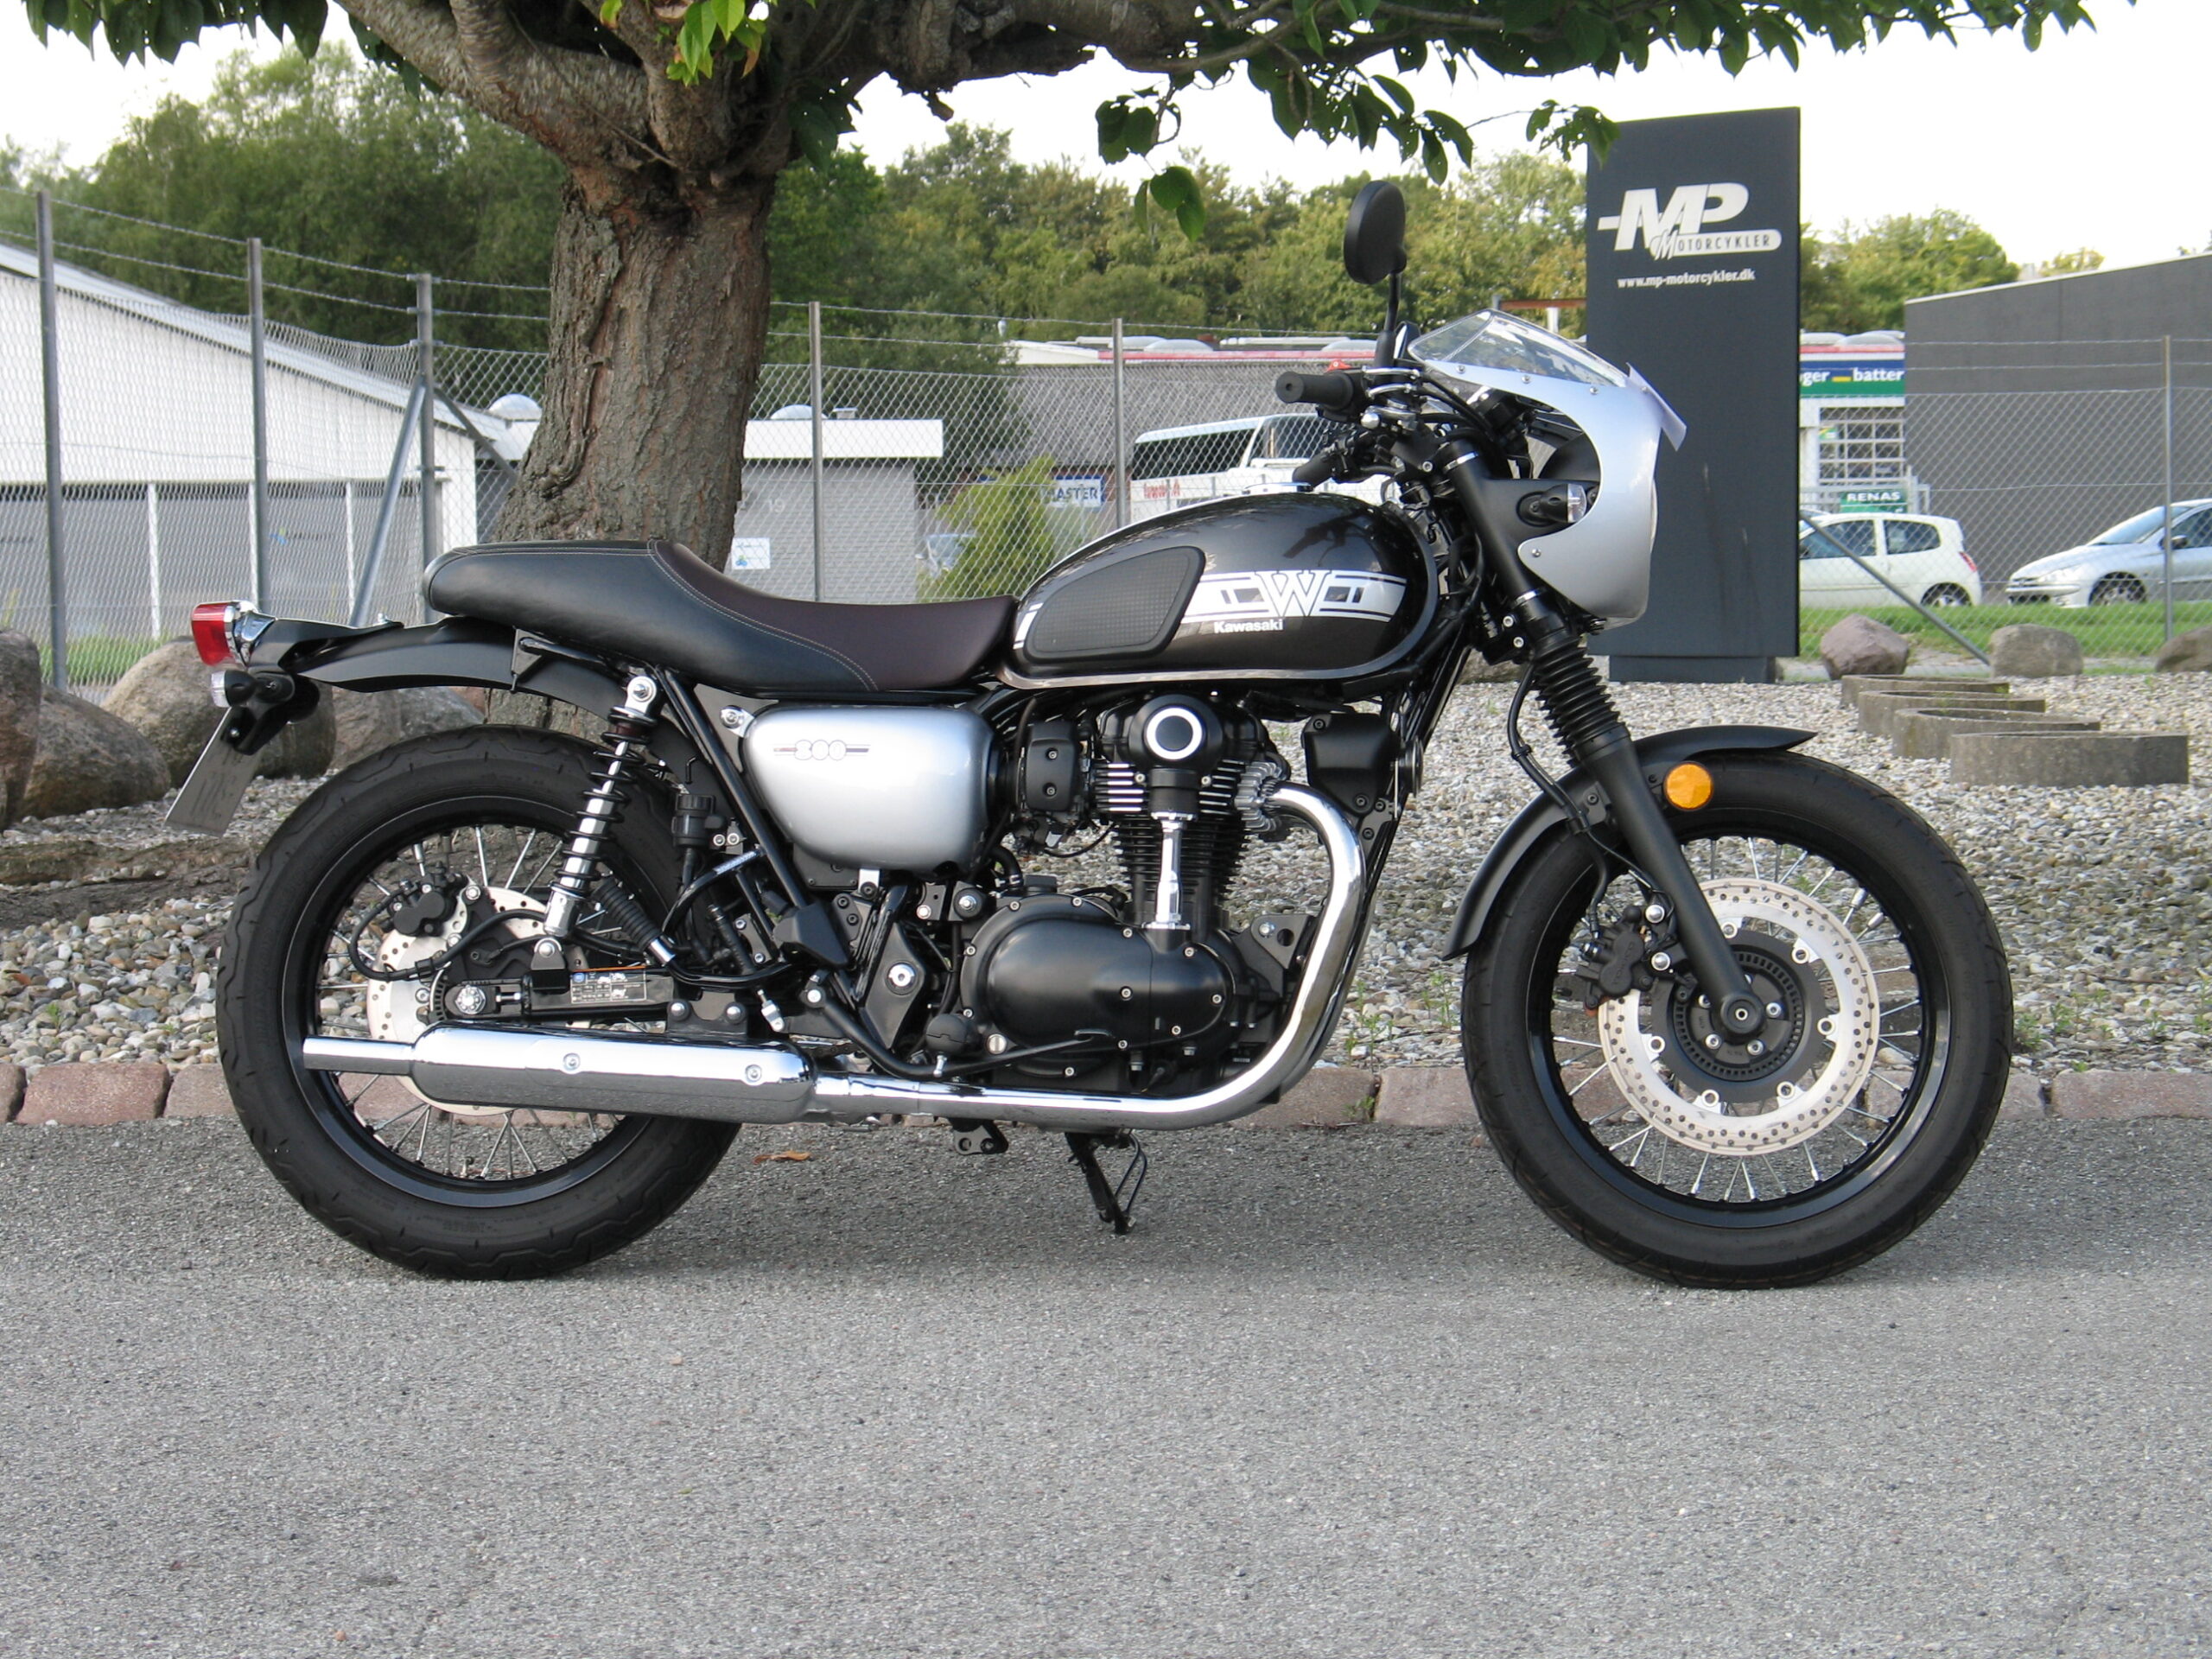 W800 – MP Motorcykler